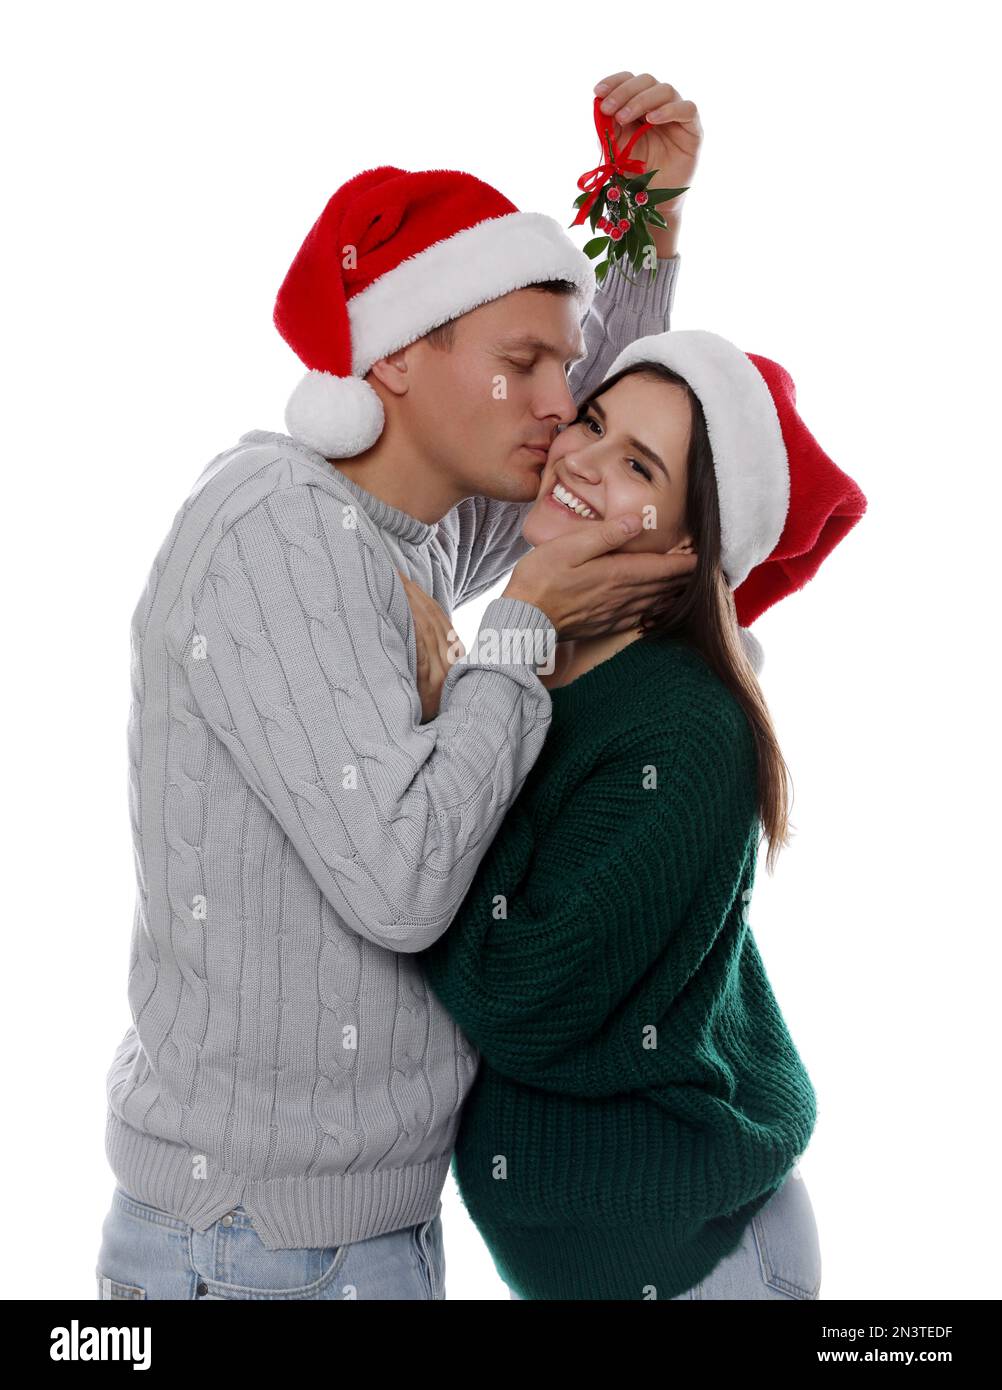 Heureux homme embrassant sa petite amie sous le groupe de GUI sur fond blanc Banque D'Images